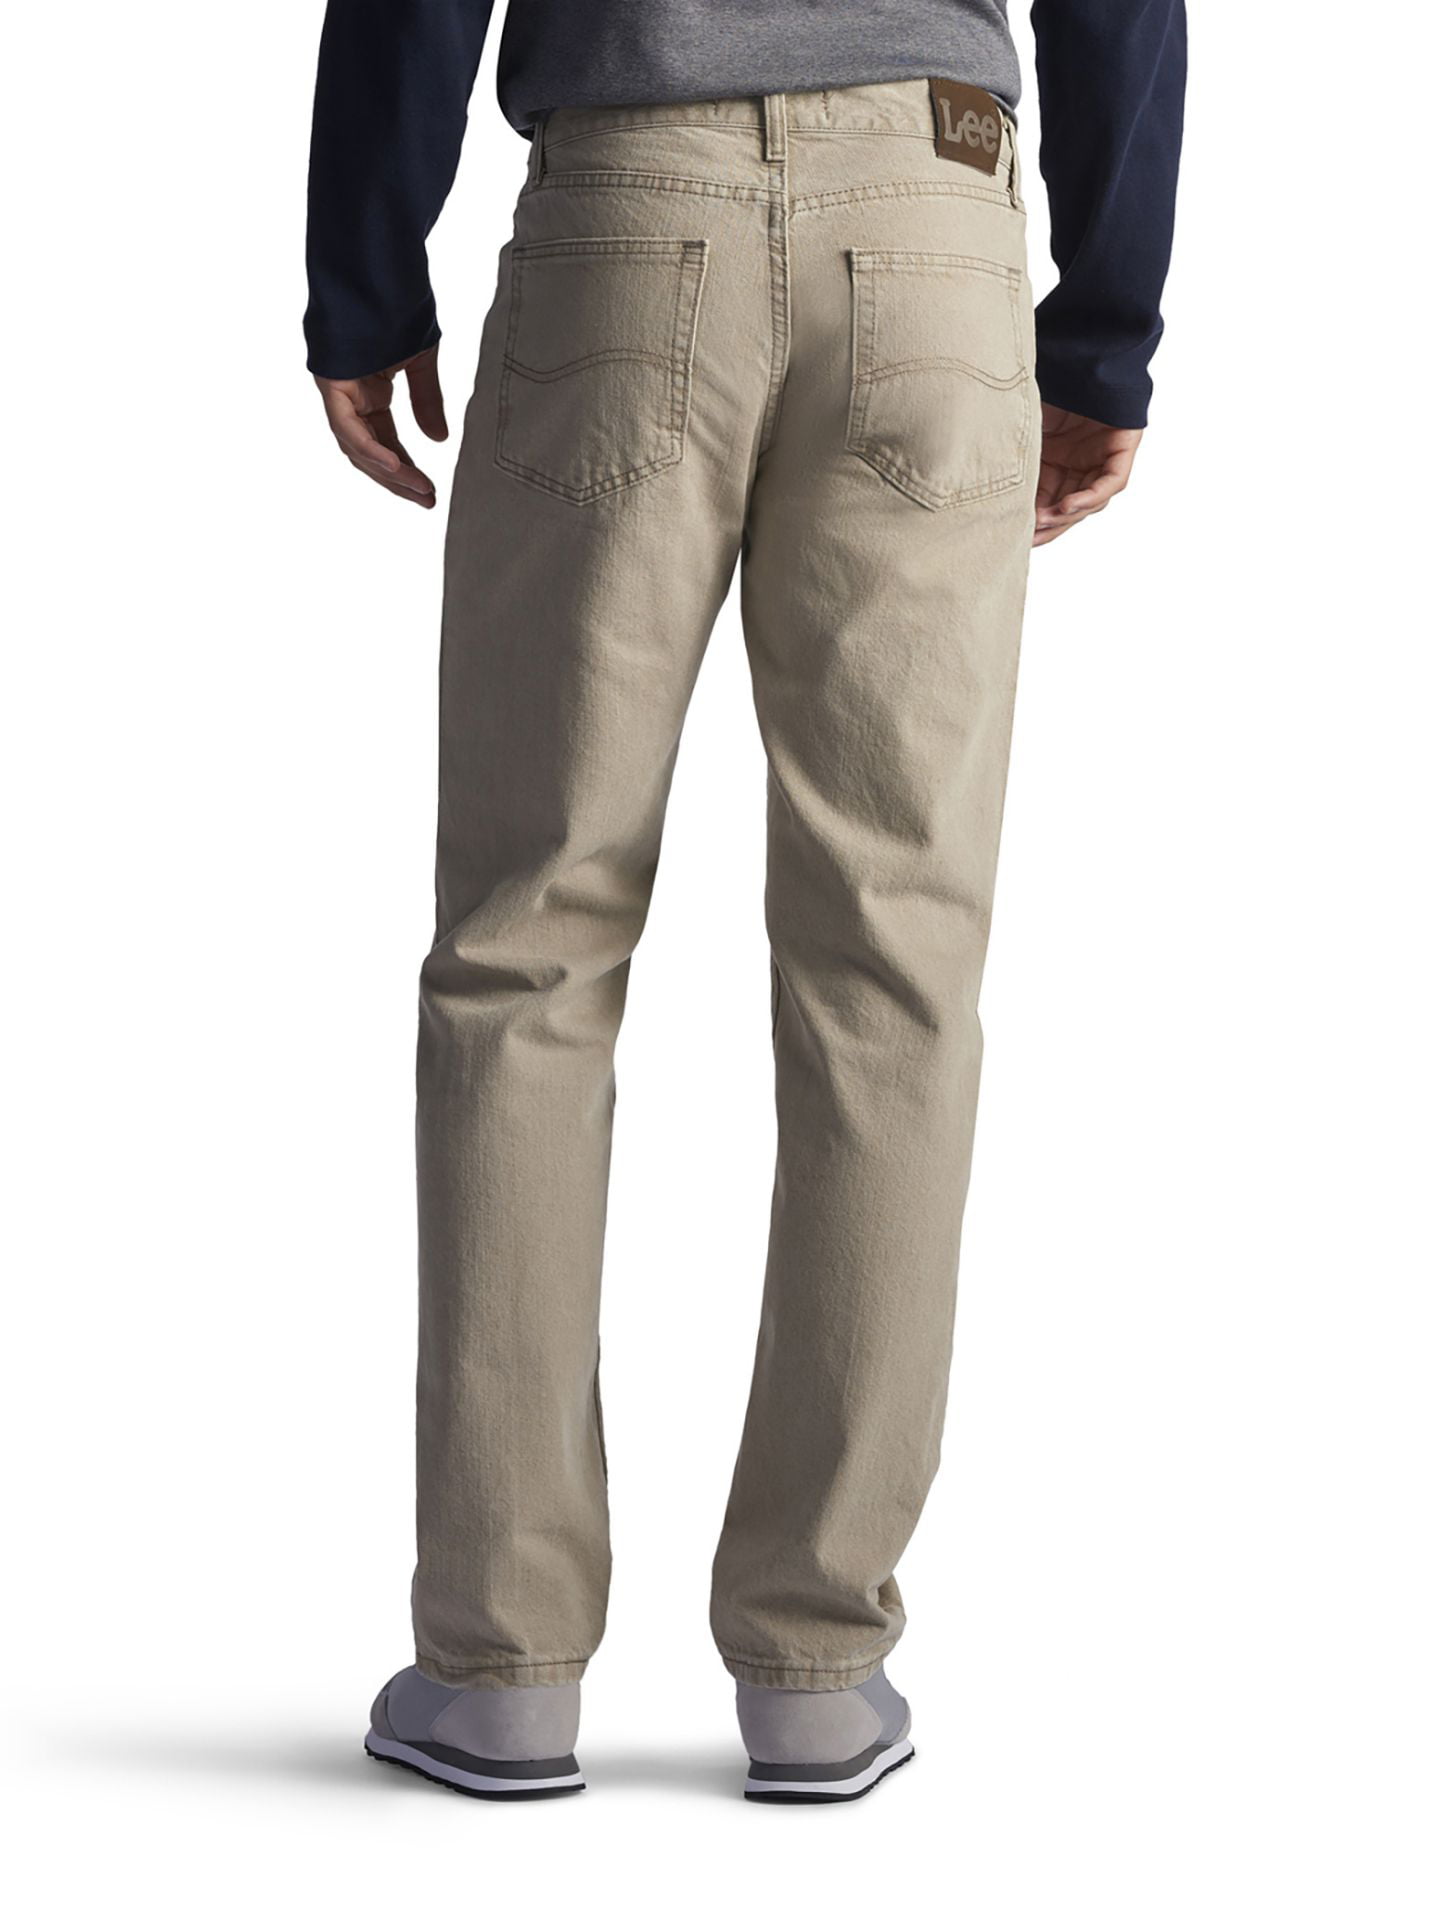 Lee Regular Fit Straight Leg Jeans - Wheat, 32X36 - Walmart.com